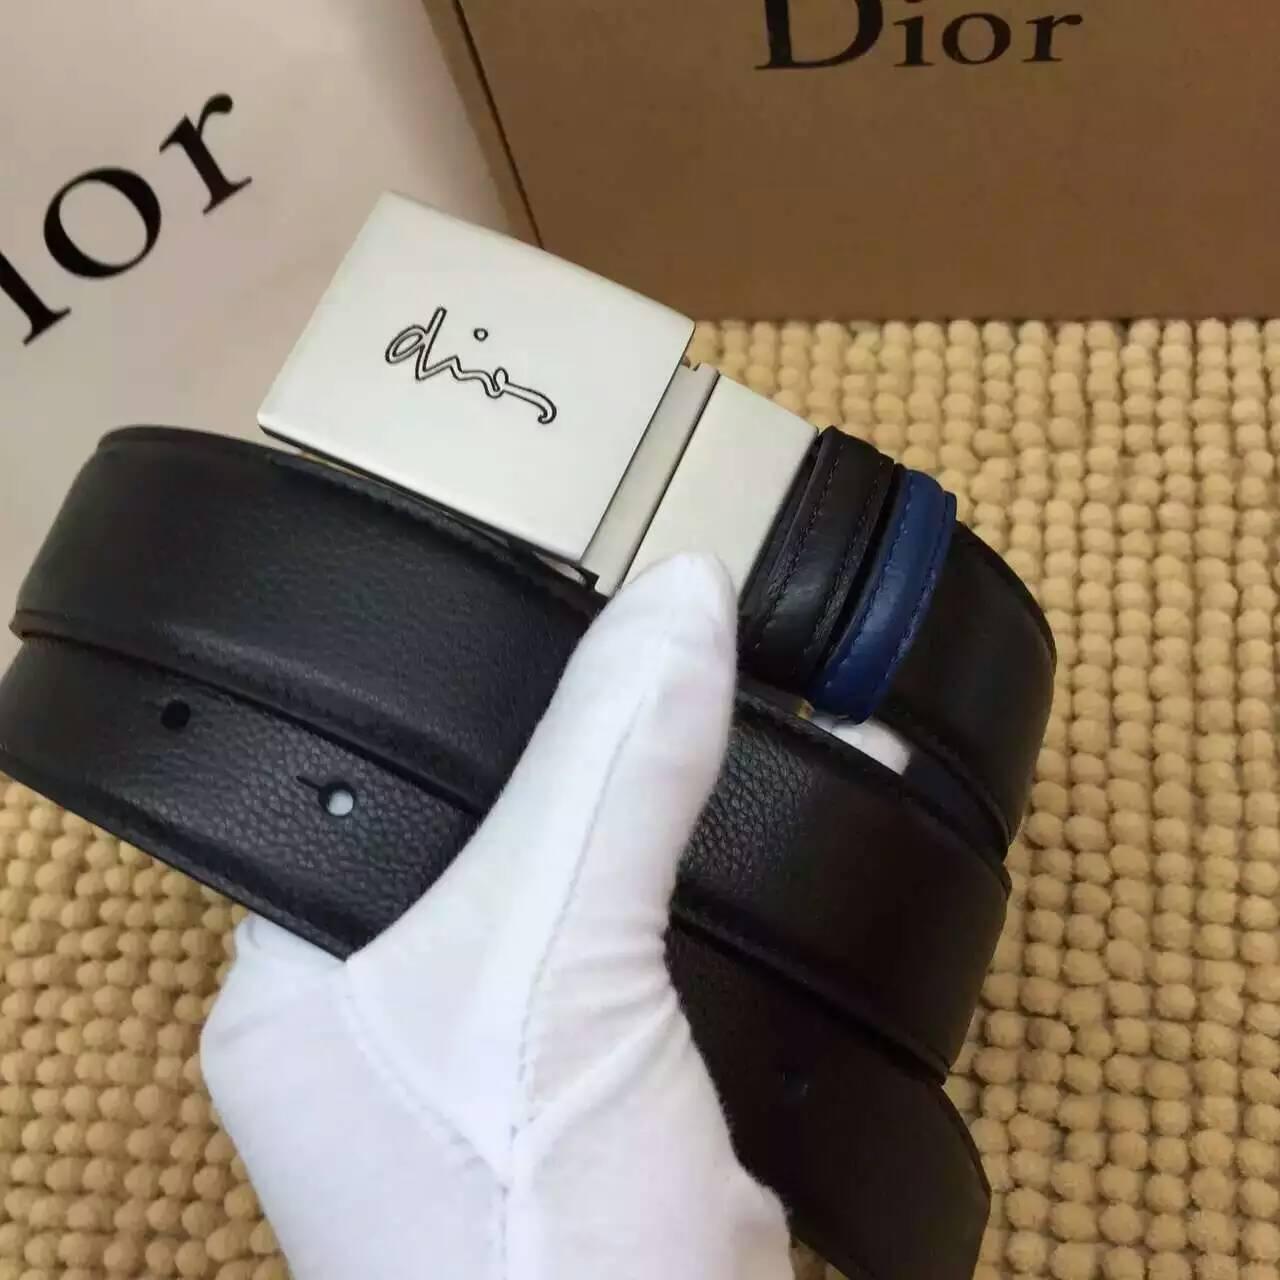 ディオールコピー ベルト Christian Dior 2016春夏新作 高品質 メンズ ベルト diorbelt160320-12